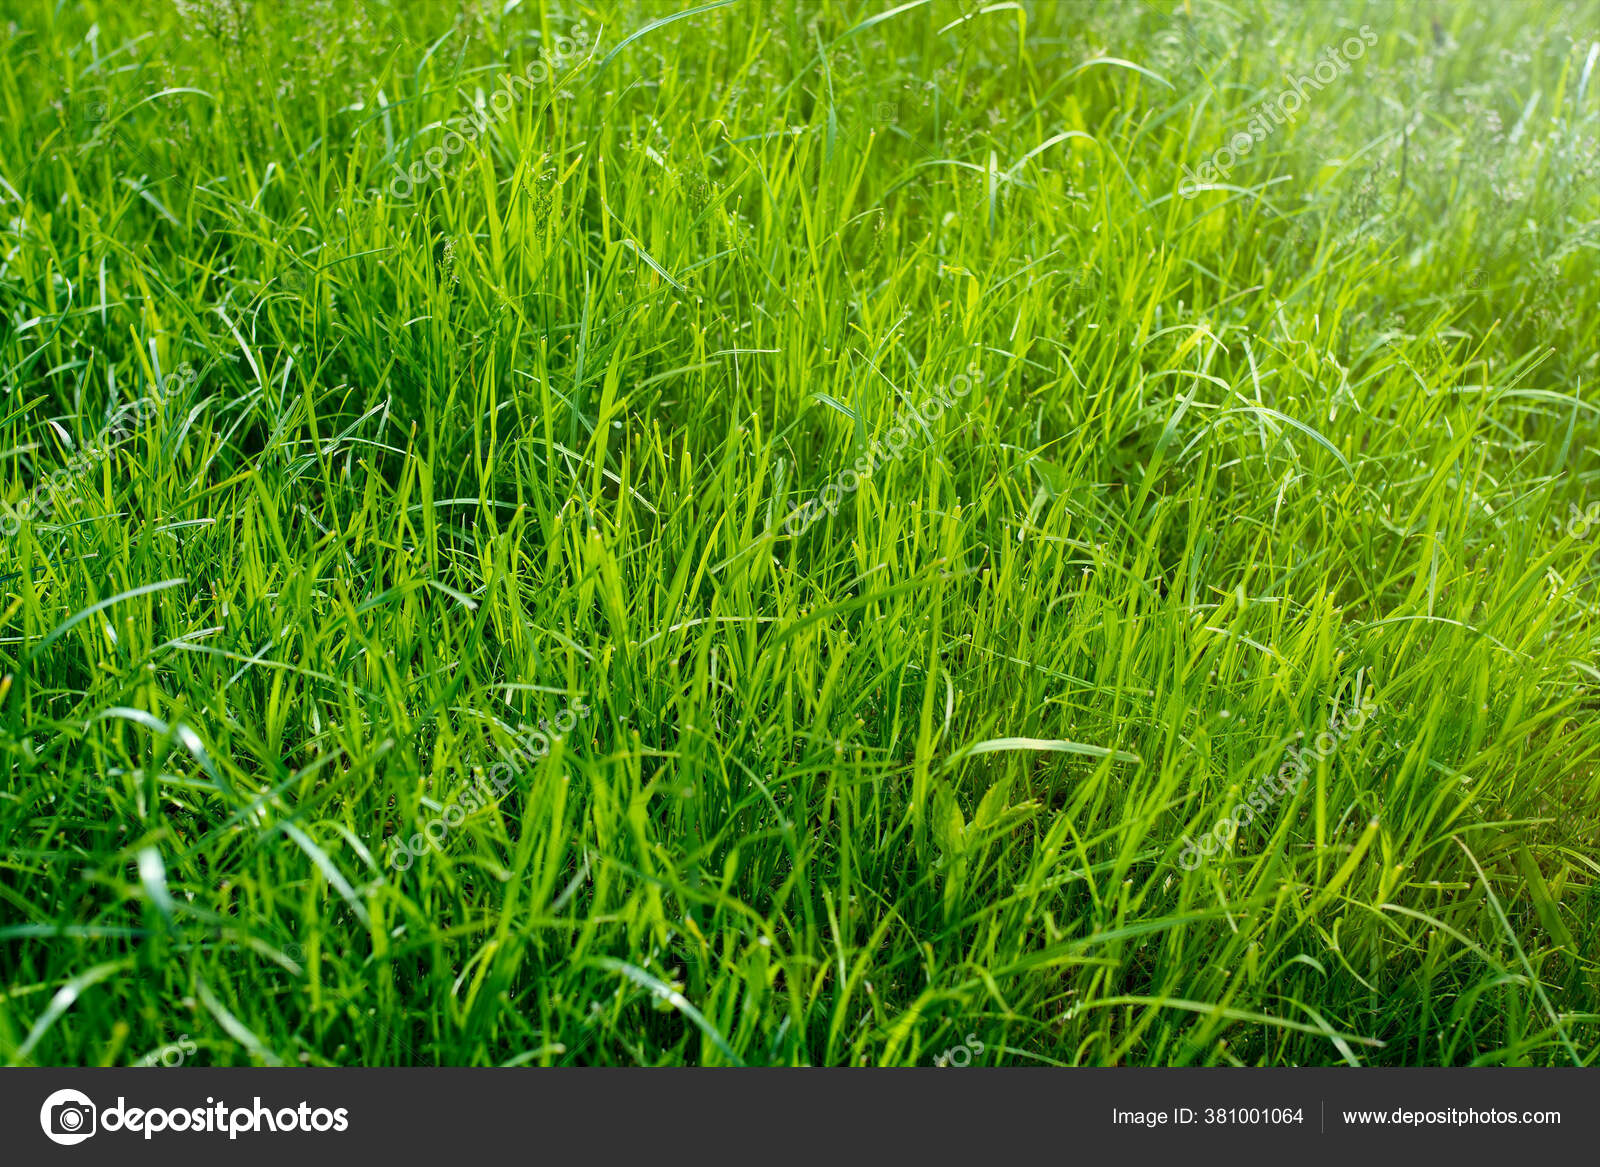 長い新鮮な緑の草のテクスチャ草の庭の背景ビュー緑の床を作るために使用される理想的なコンセプト サッカーピッチを訓練するための芝生 草 のゴルフコース緑の芝生のパターンテクスチャ背景 ストック写真 C Elenarostunova